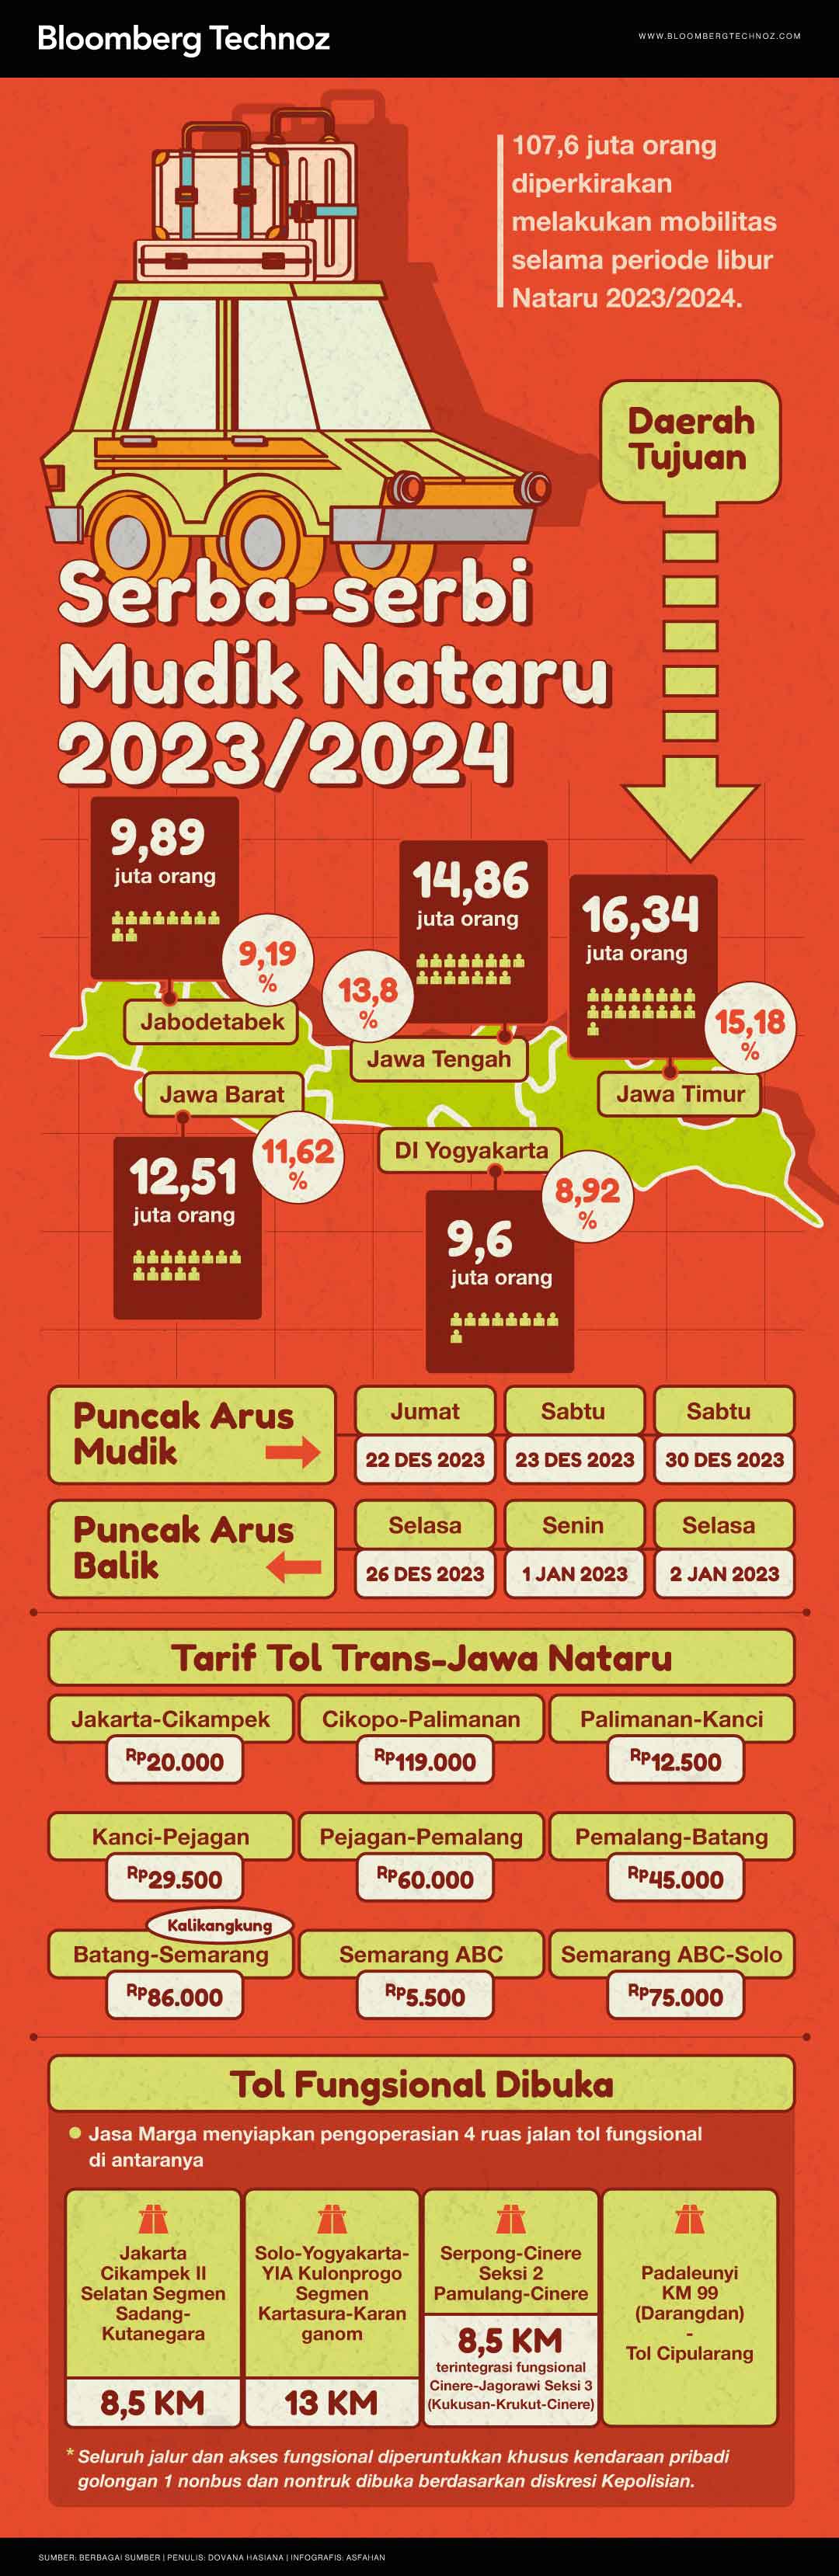 Infografis Serba-serbi Mudik Nataru 2023/2024 (Asfahan/Bloomberg Technoz)